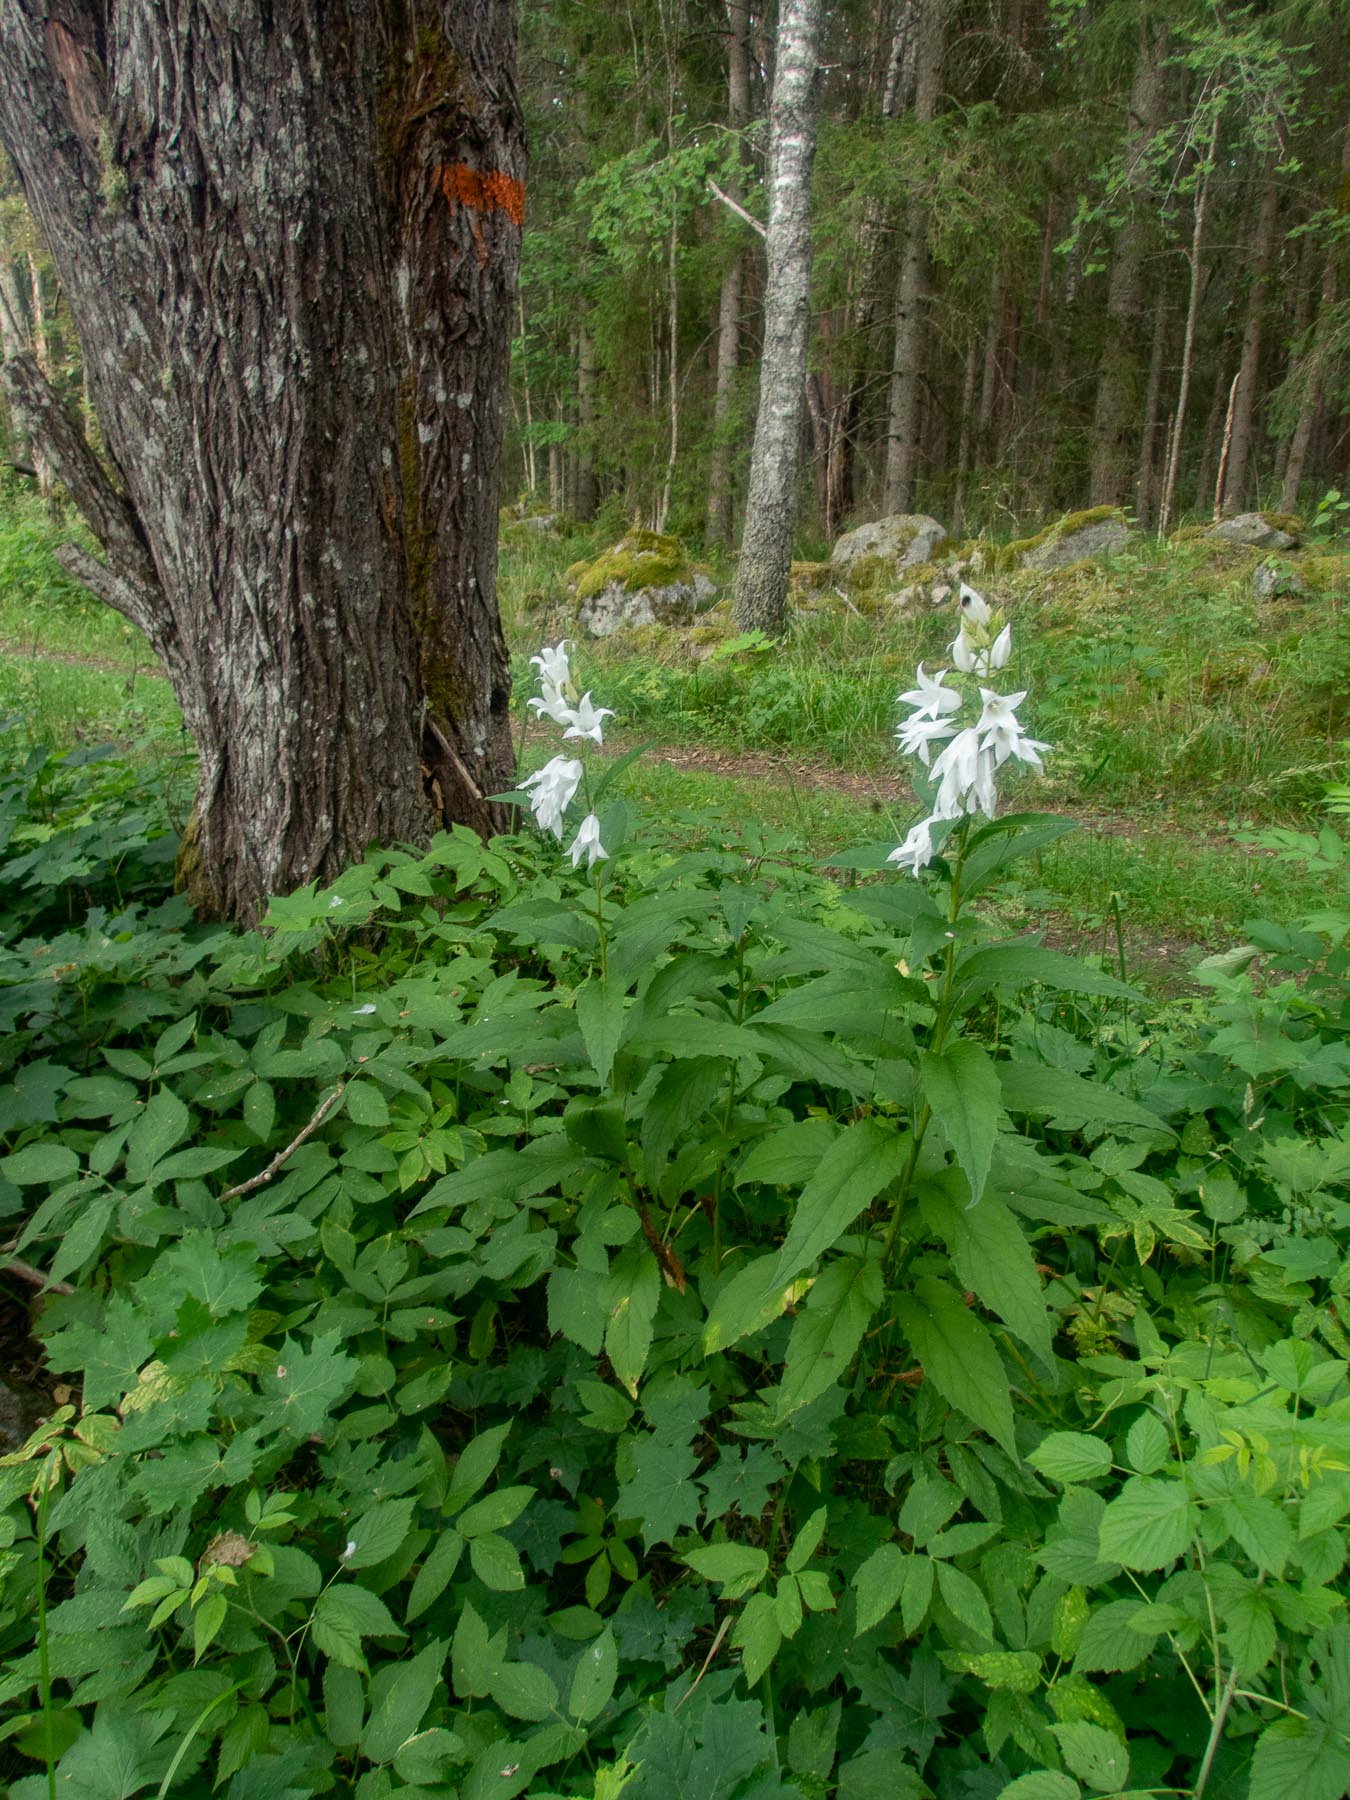 Колокольчик широколистный (Campanula latifolia)Белая форма.
Национальный парк F?rnebofj?rden, Швеция, июль 2021. Автор фото: Сутормина Марина